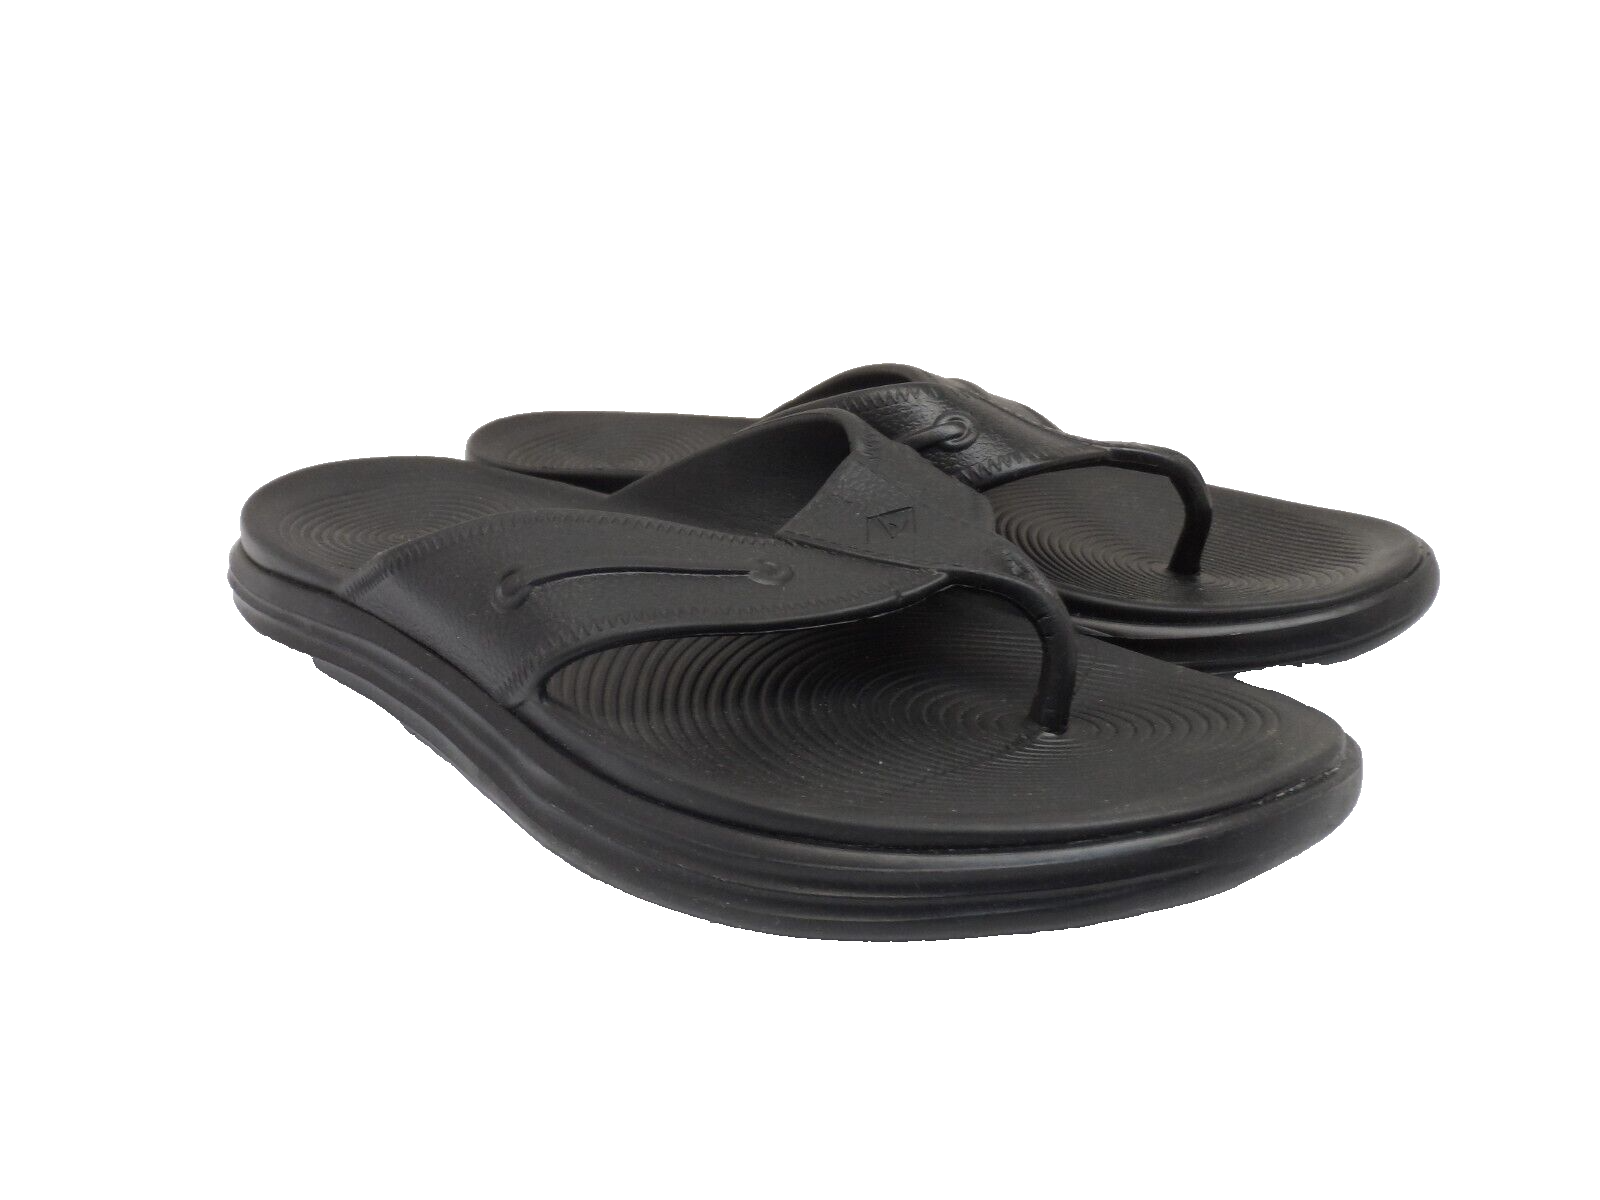 Primary image for Sperry Men's Windward Float Thong Flip-Flop Sandals Black/Black Size 13M